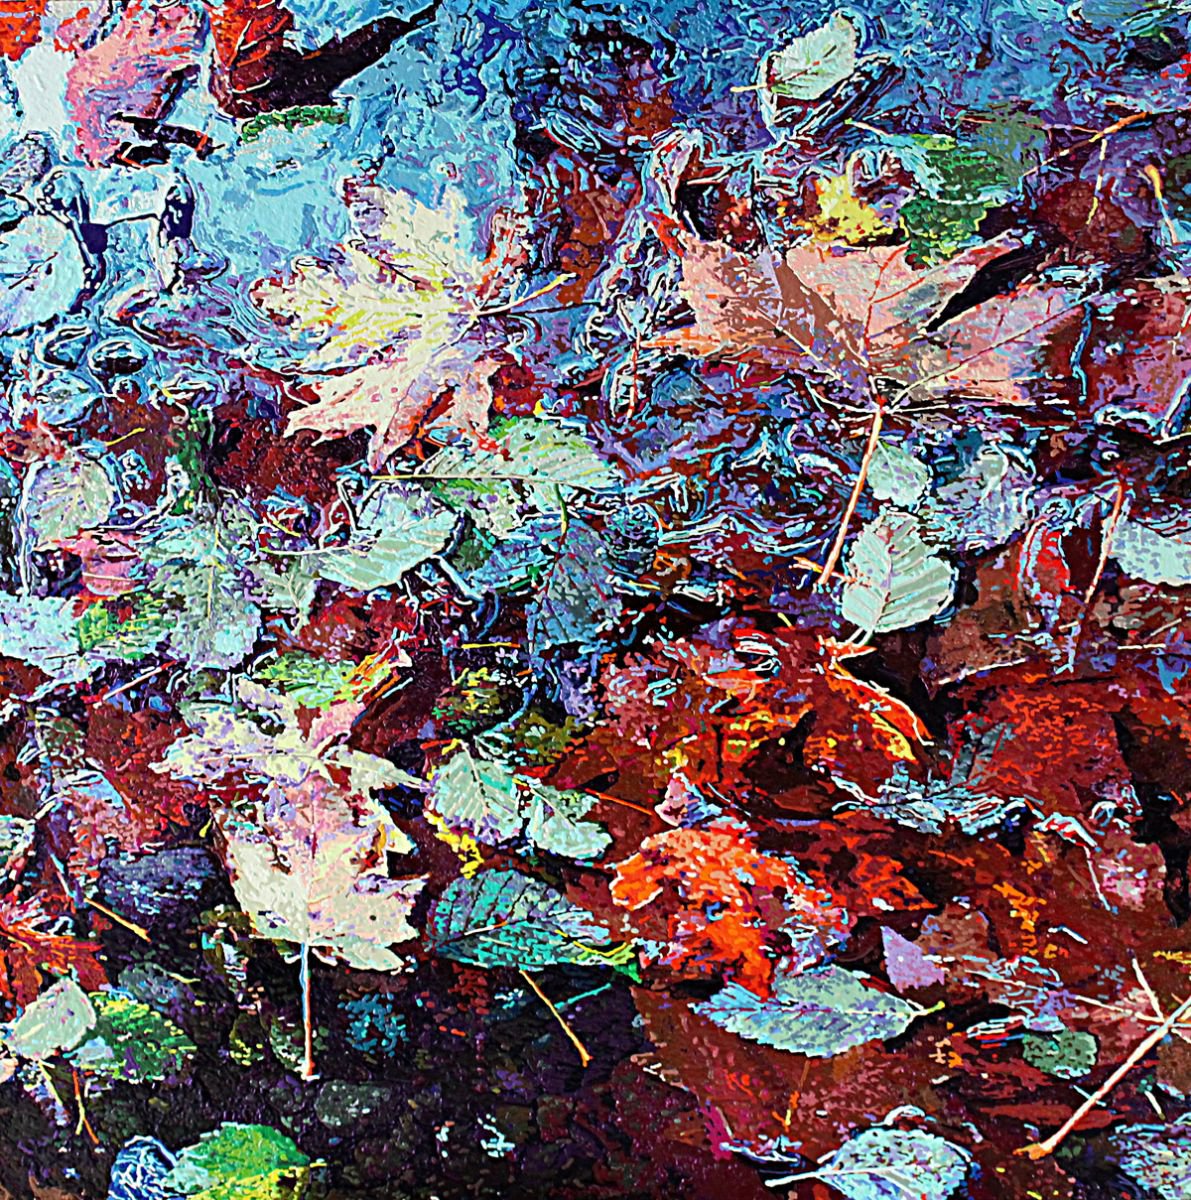 Downstream by Greg Navratil